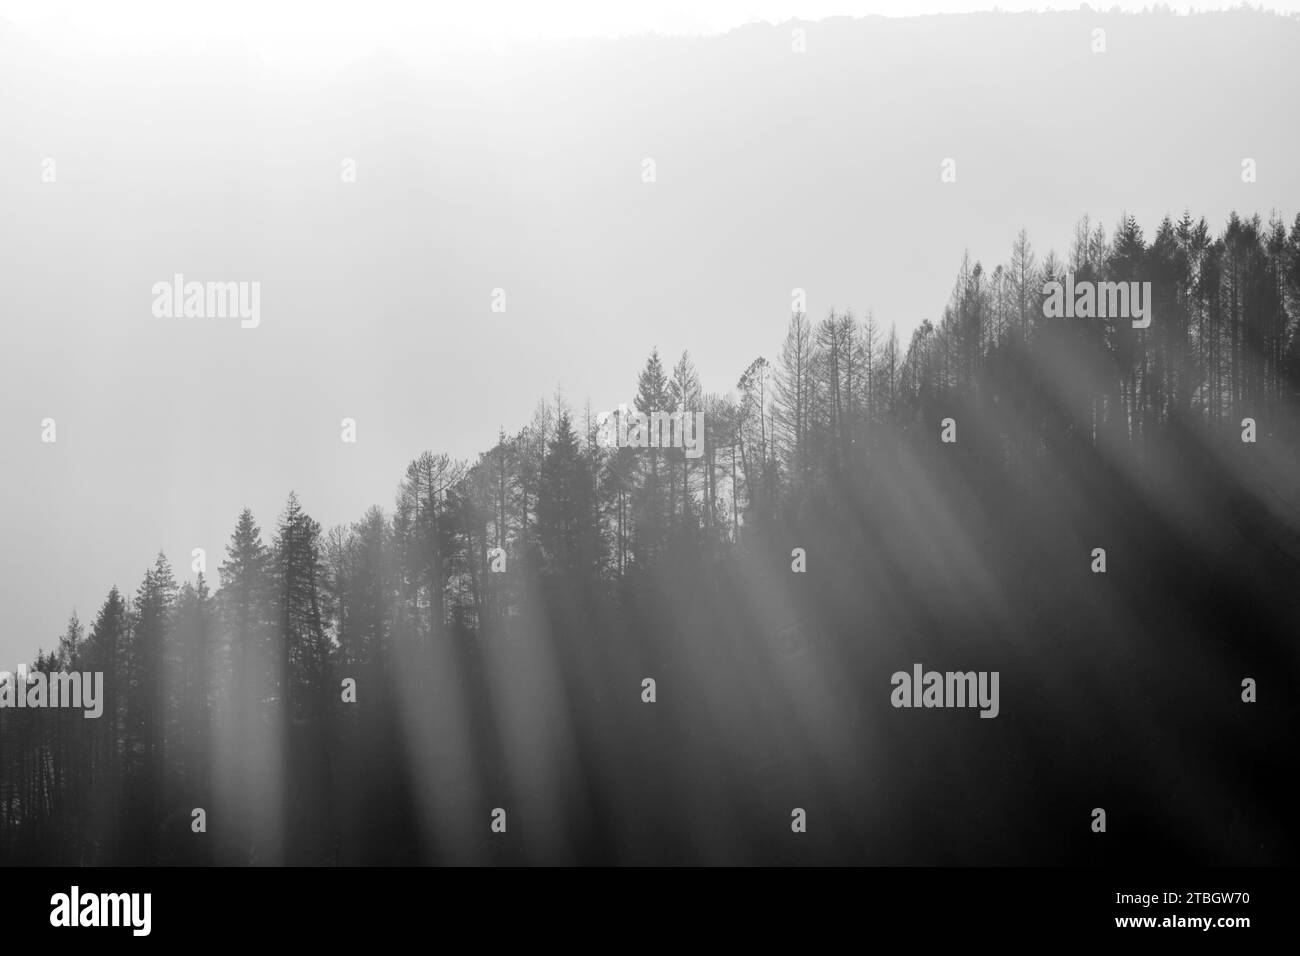 Photographie de paysage atmosphérique en noir et blanc du soleil qui brille à travers une montagne bordée d'arbres Banque D'Images